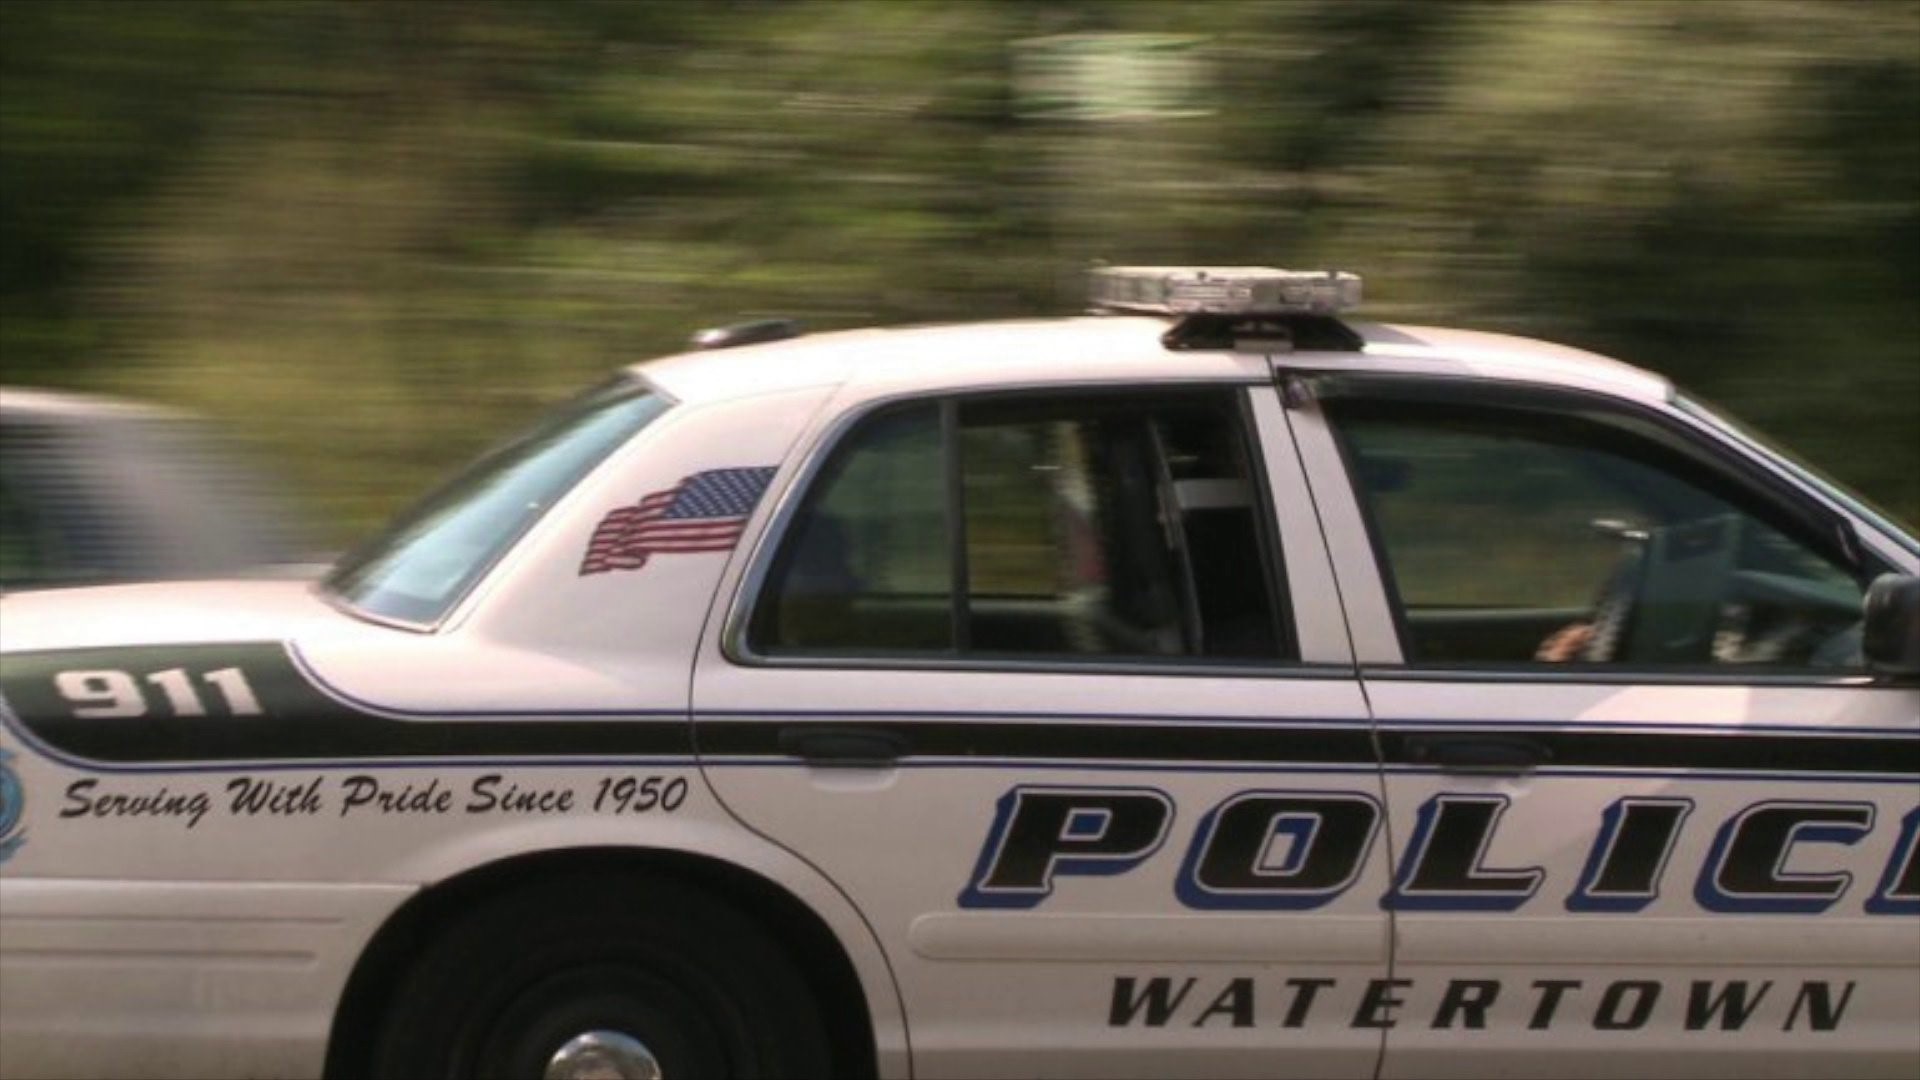 911 Tapes from Watertown Burglary